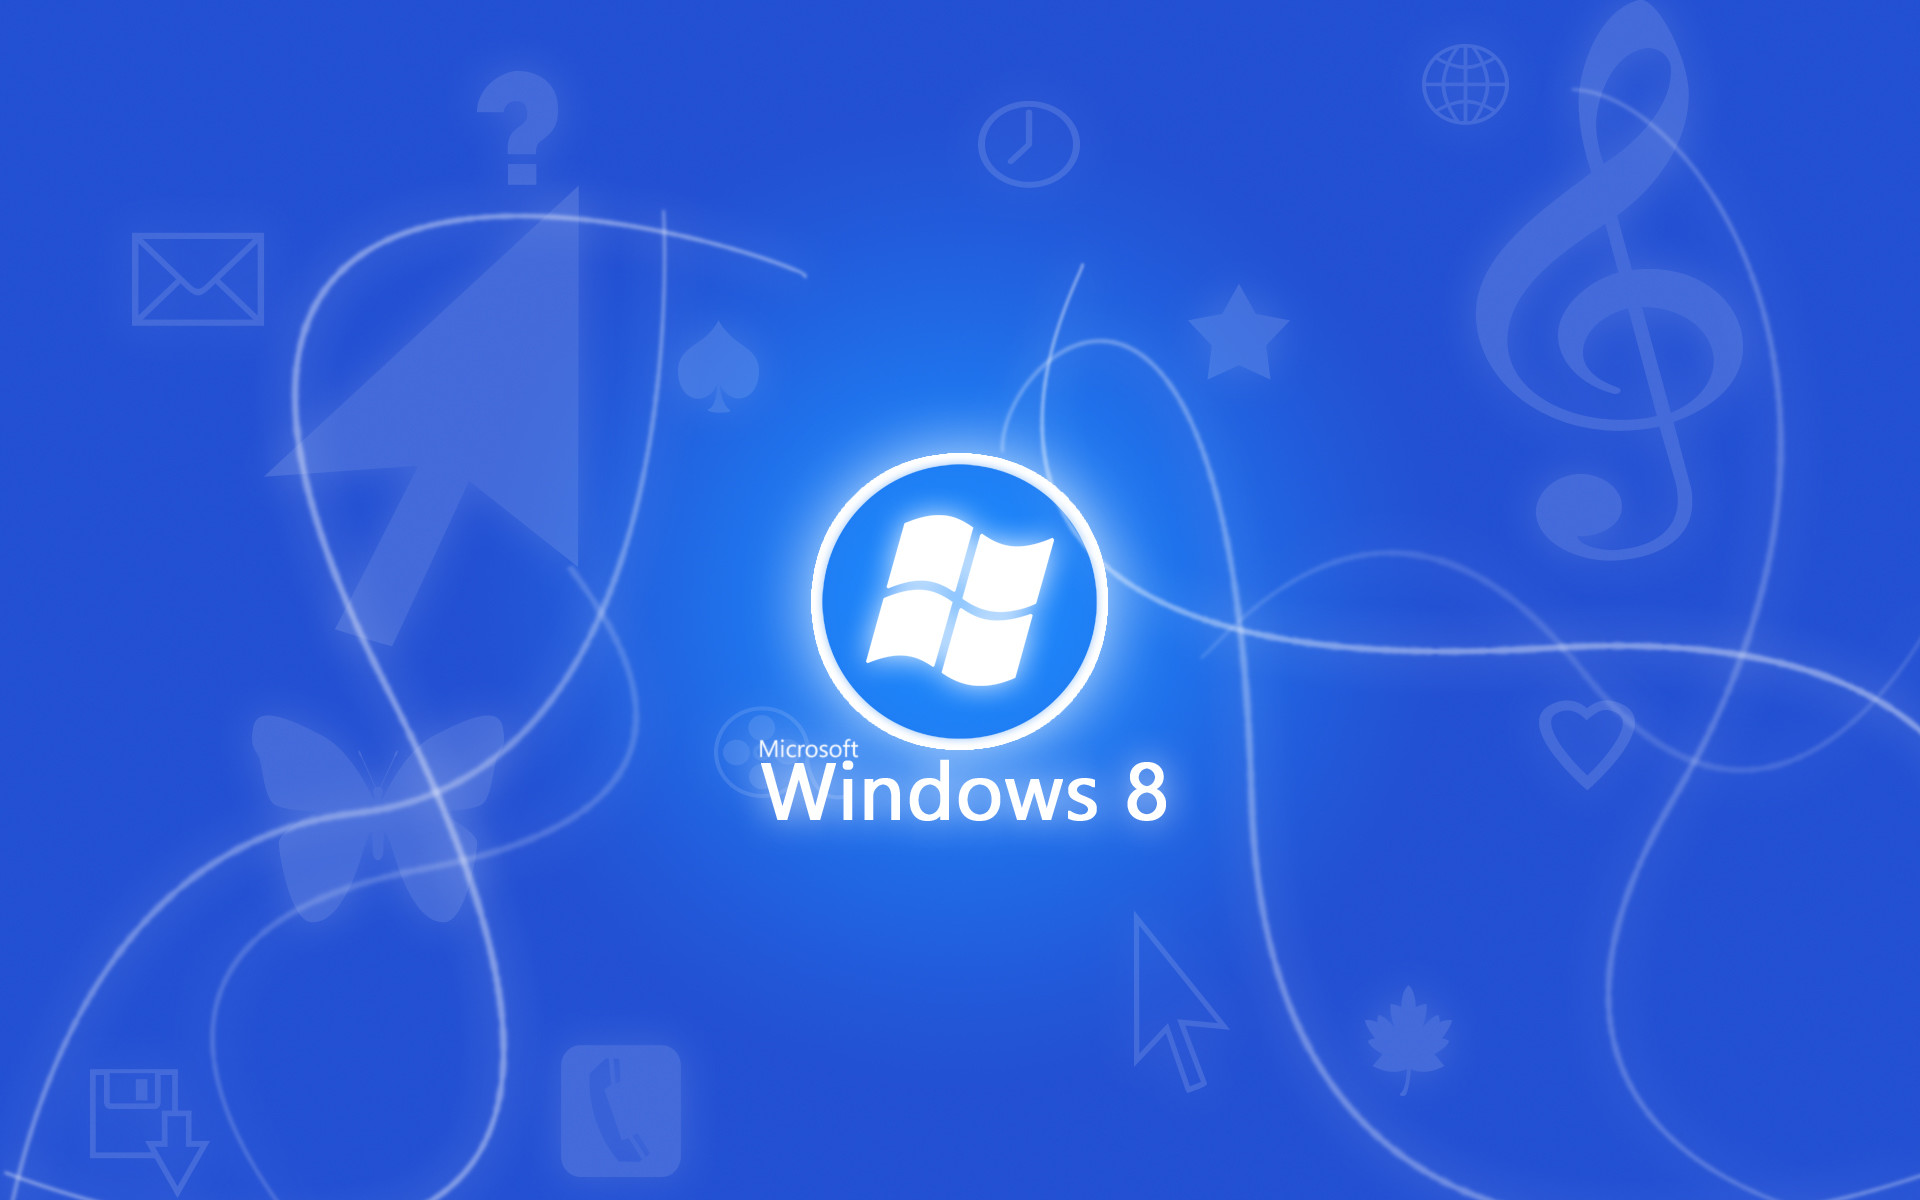 1920x1200 Windows 8 HD Wallpaper | Hintergrund |  | ID:279467 - Wallpaper  Abyss